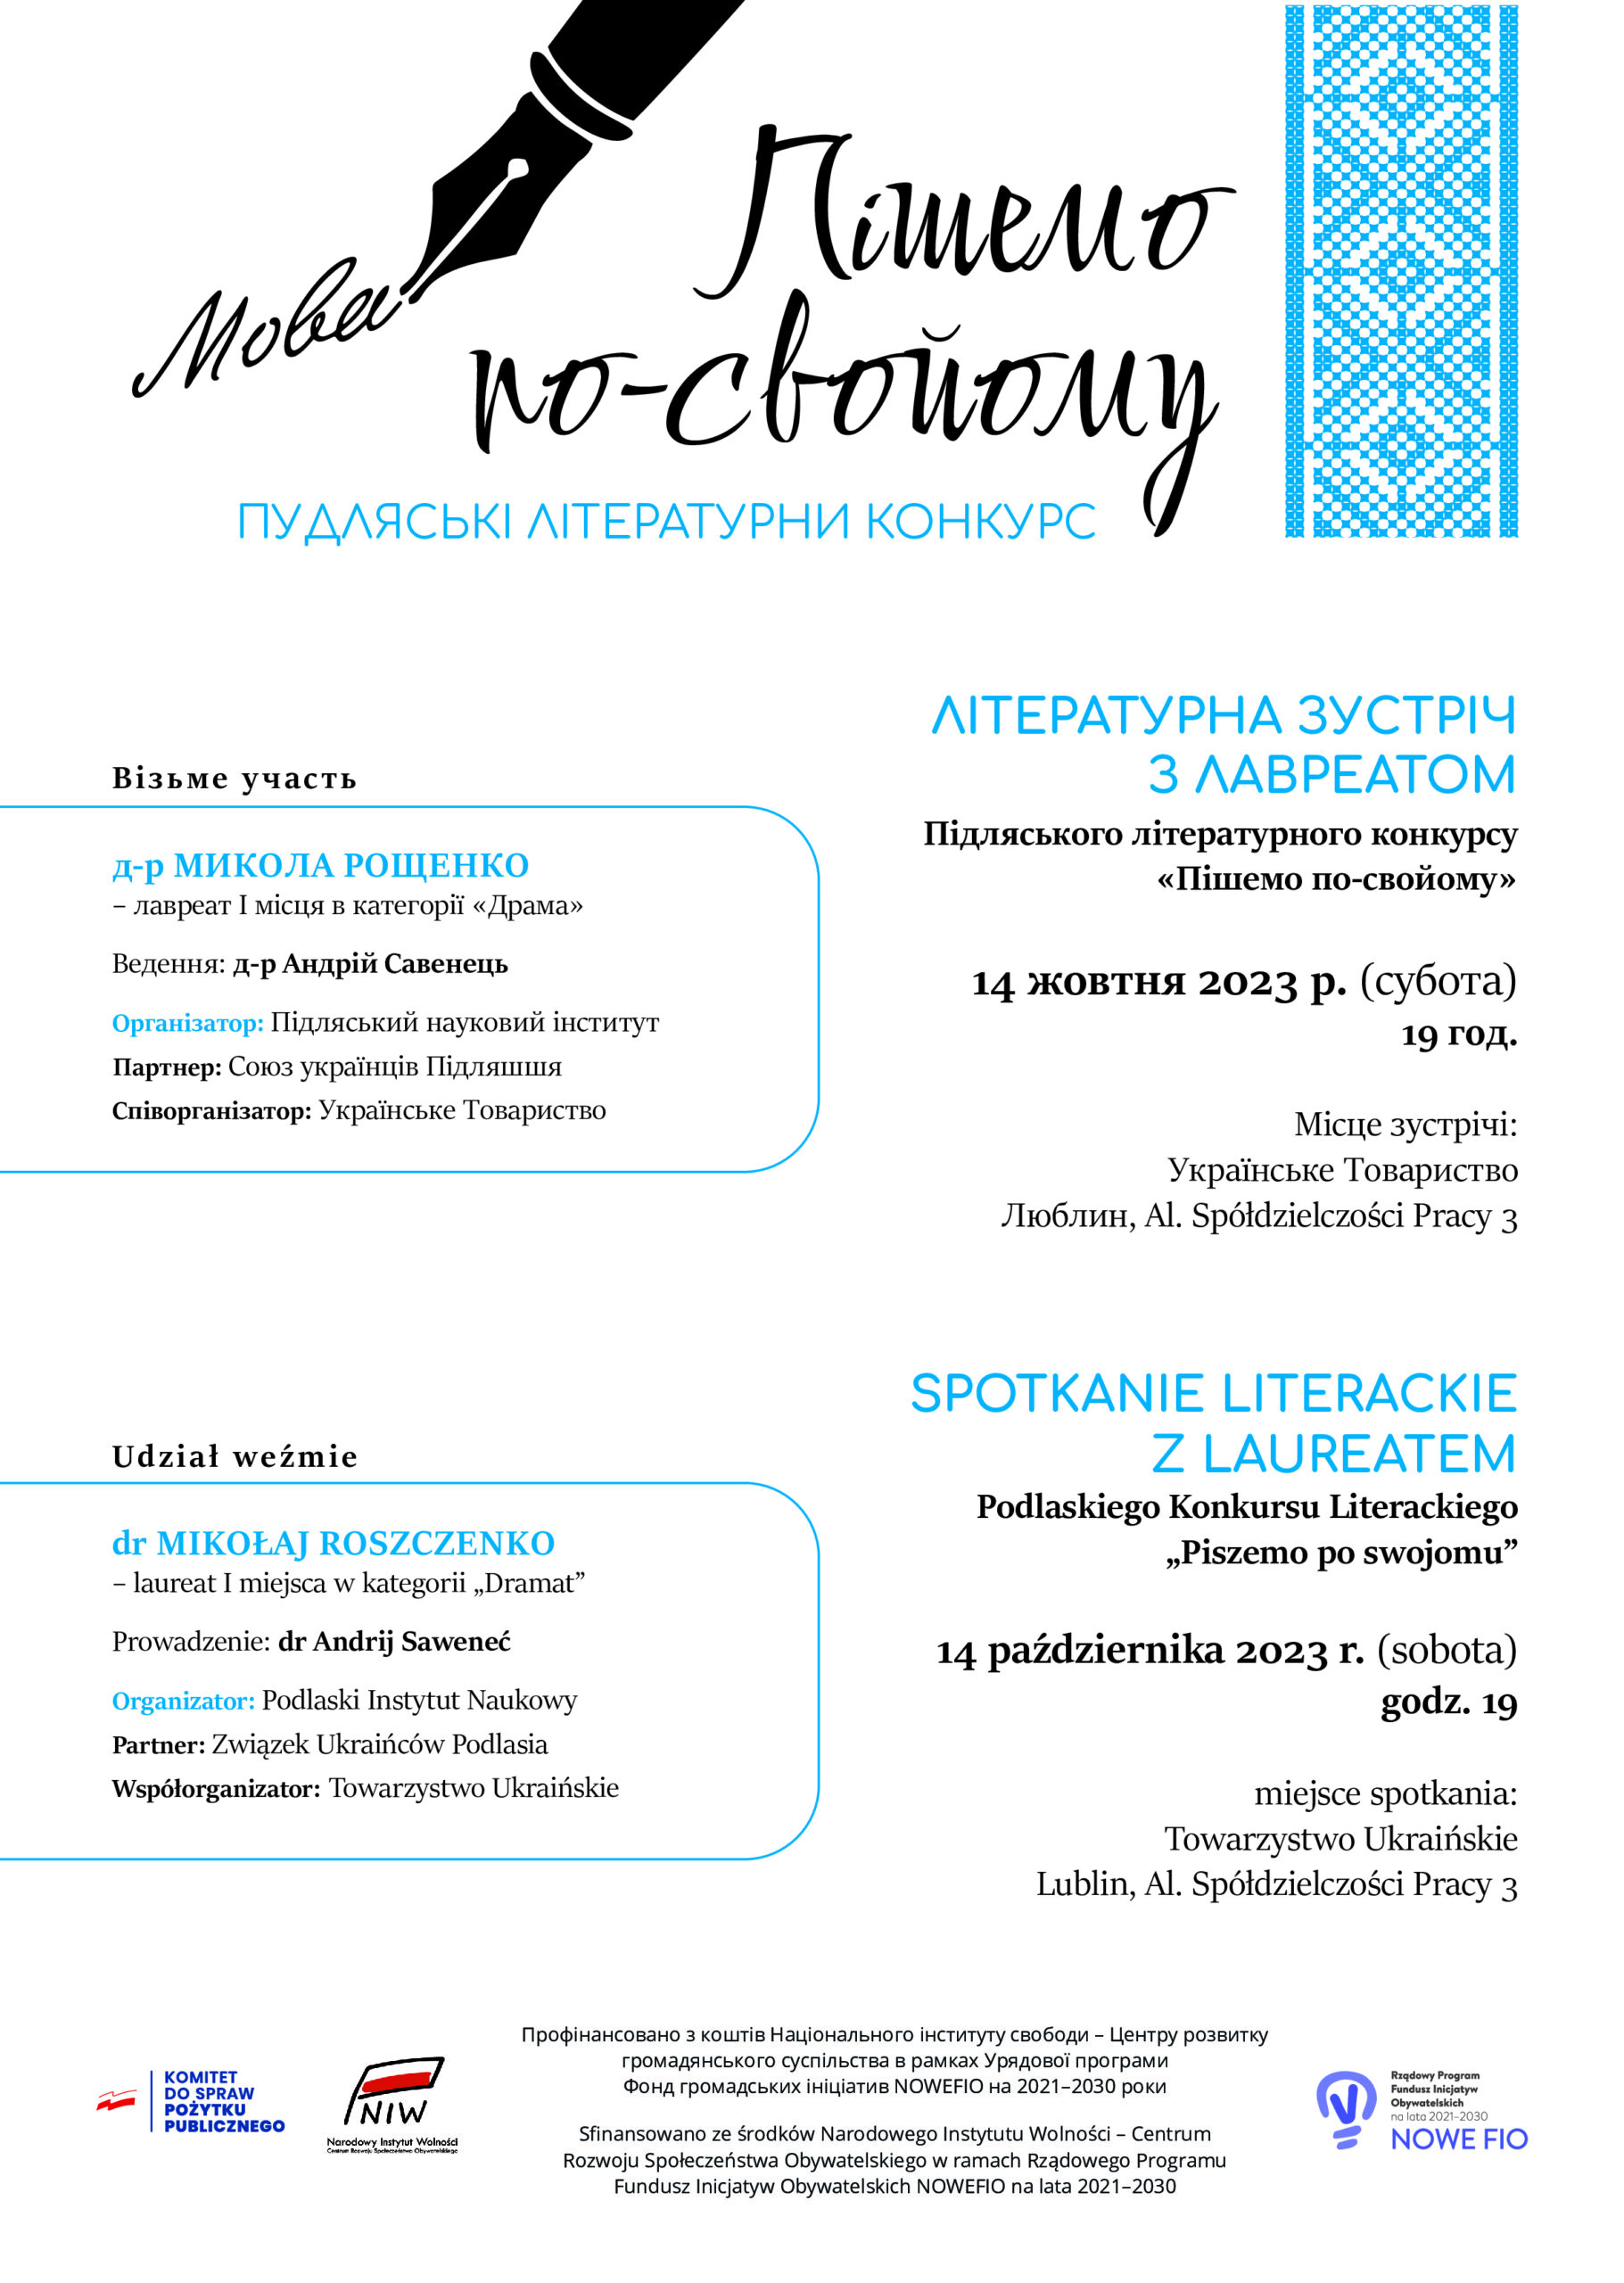 Dzisiaj w Lublinie spotkanie literackie z laureatem konkursu „Piszemo po swojomu”